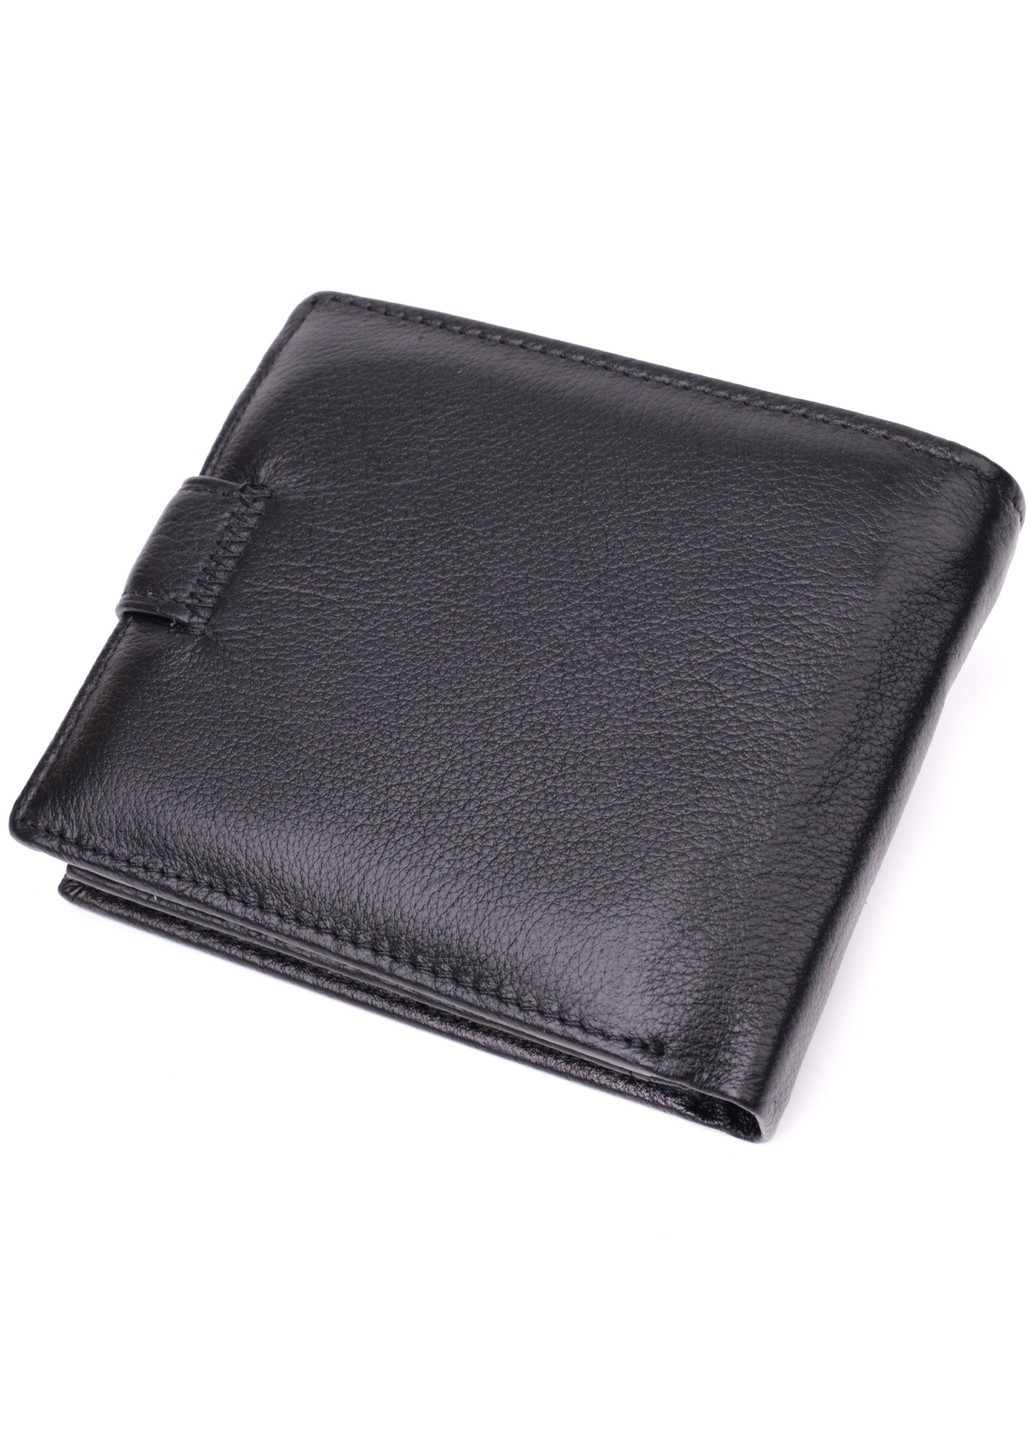 Бумажник мужской среднего размера из натуральной кожи 22473 Черный st leather (277980431)